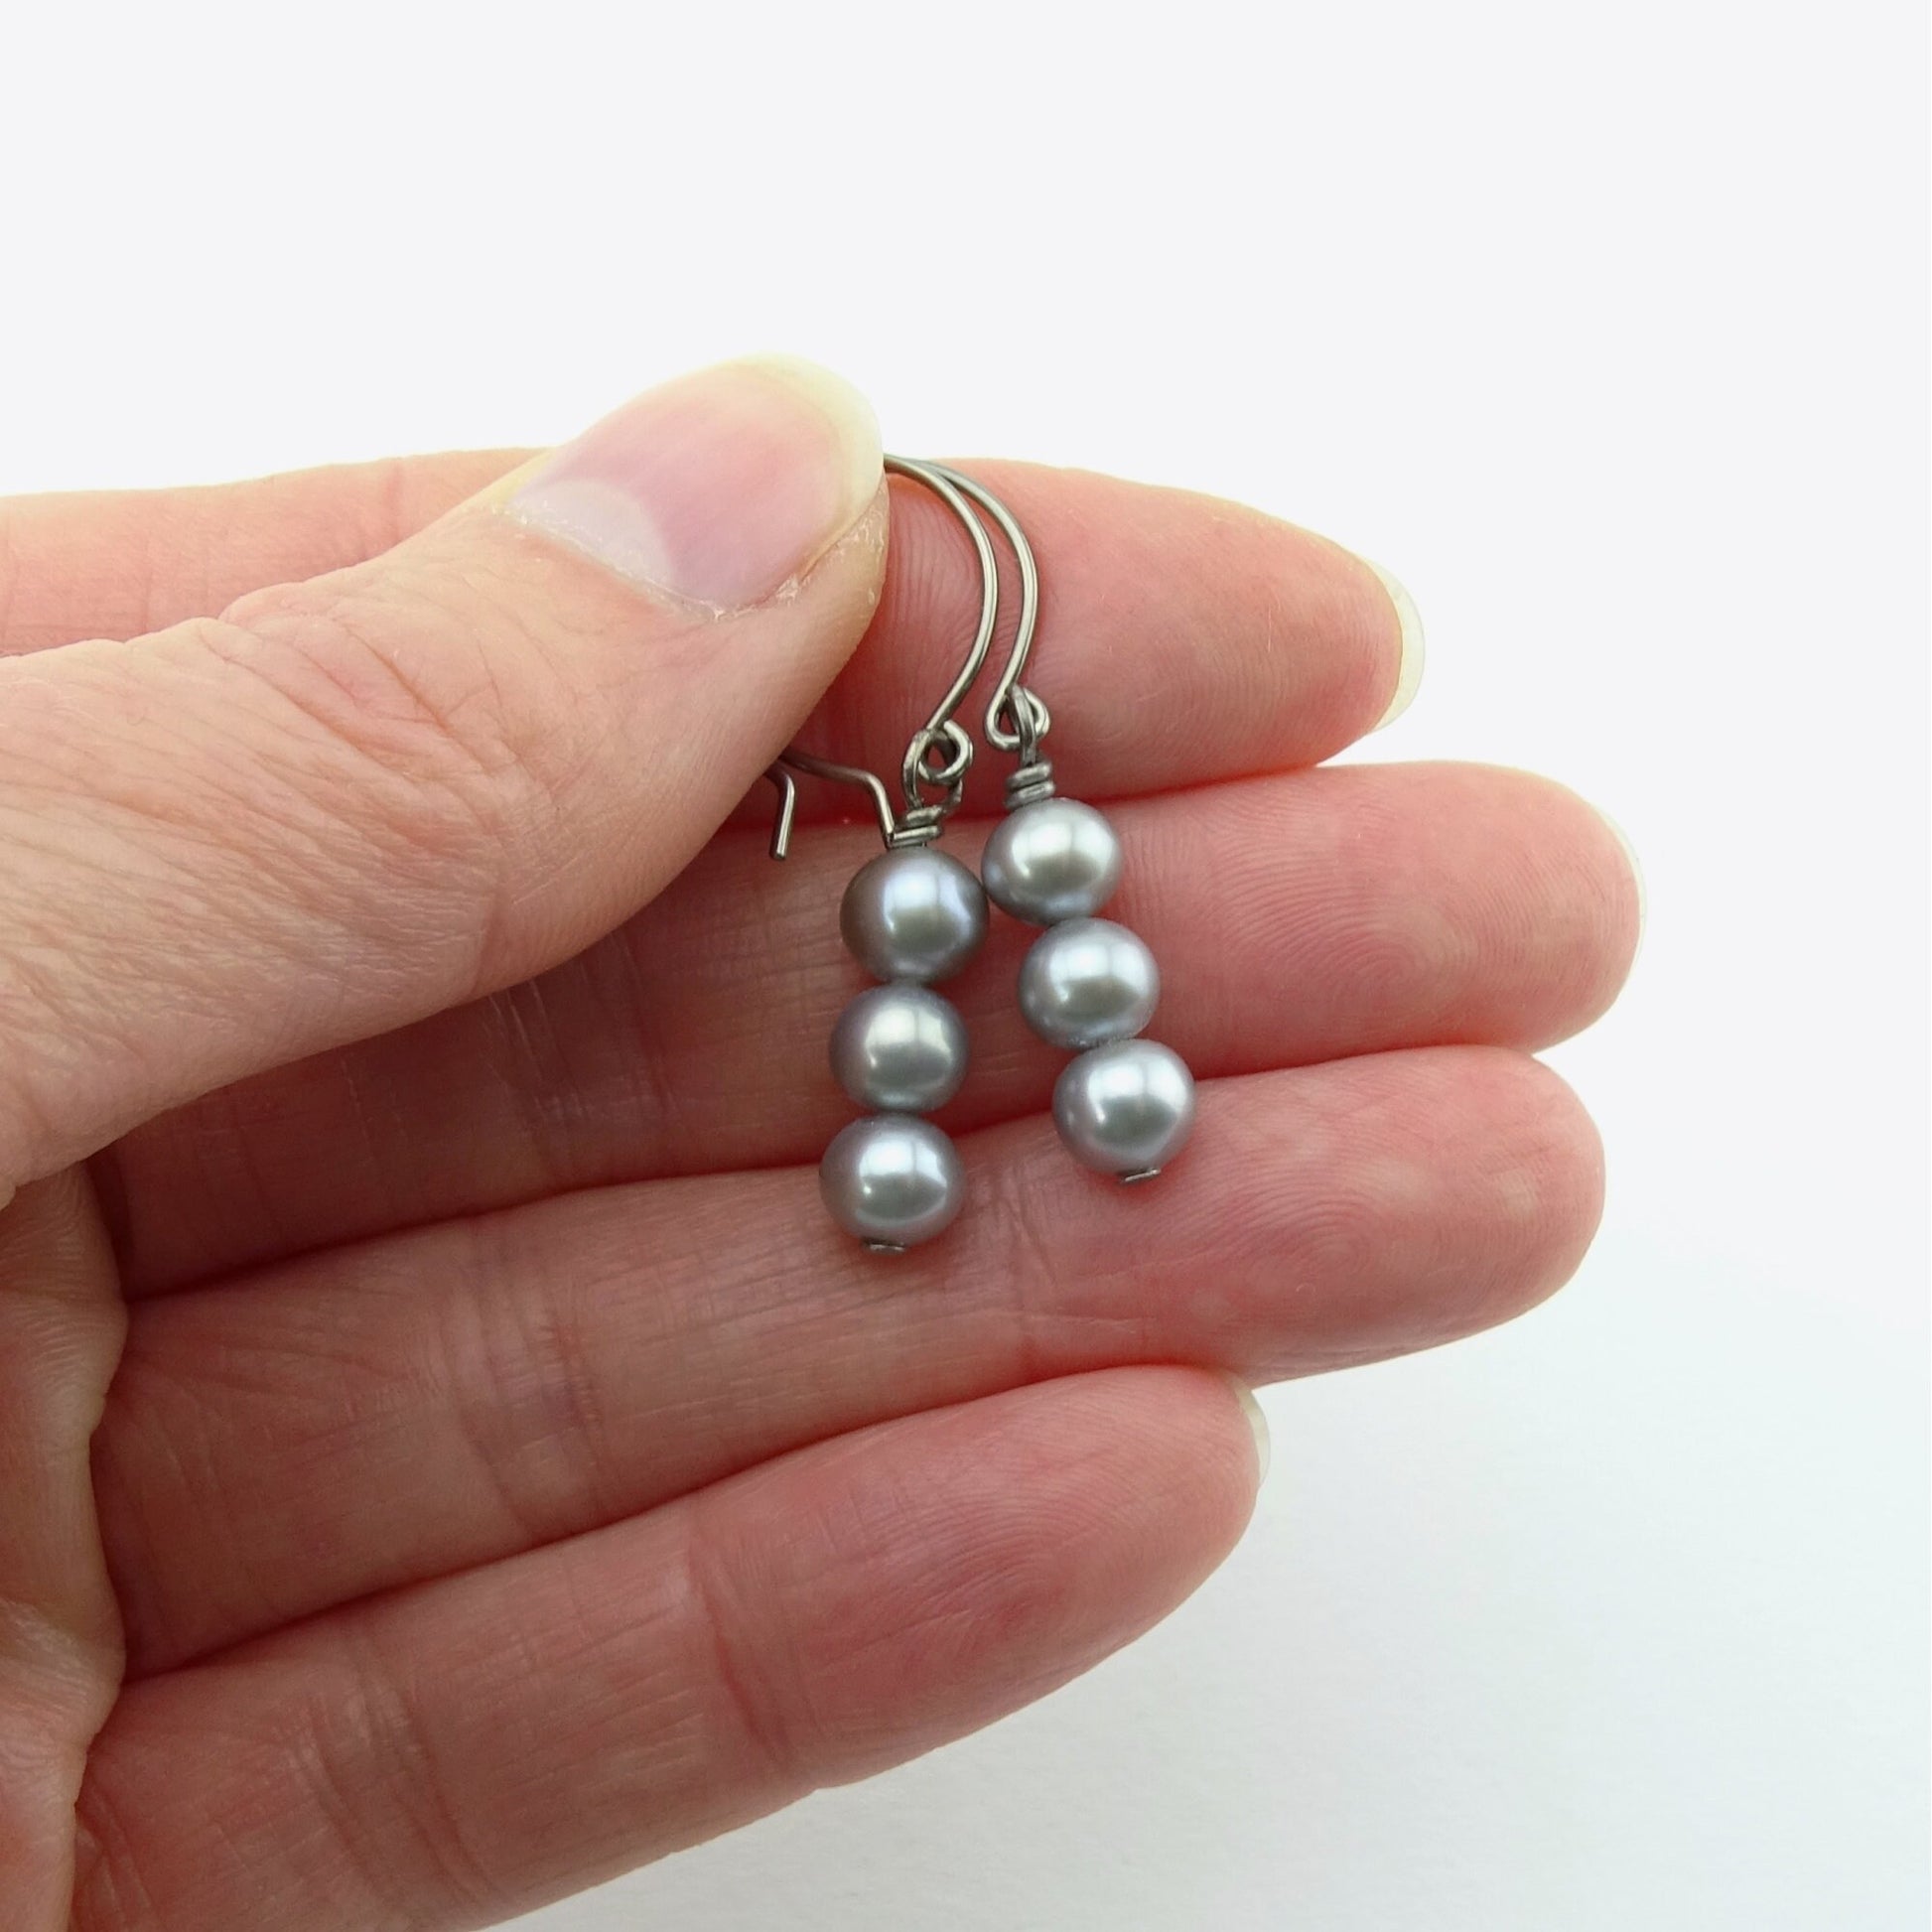 Triple Gray Pearl Niobium Earrings, Grey Freshwater Pearls Titanium Earrings, Hypoallergenic Hoop Nickel Free Earrings for Sensitive Ears